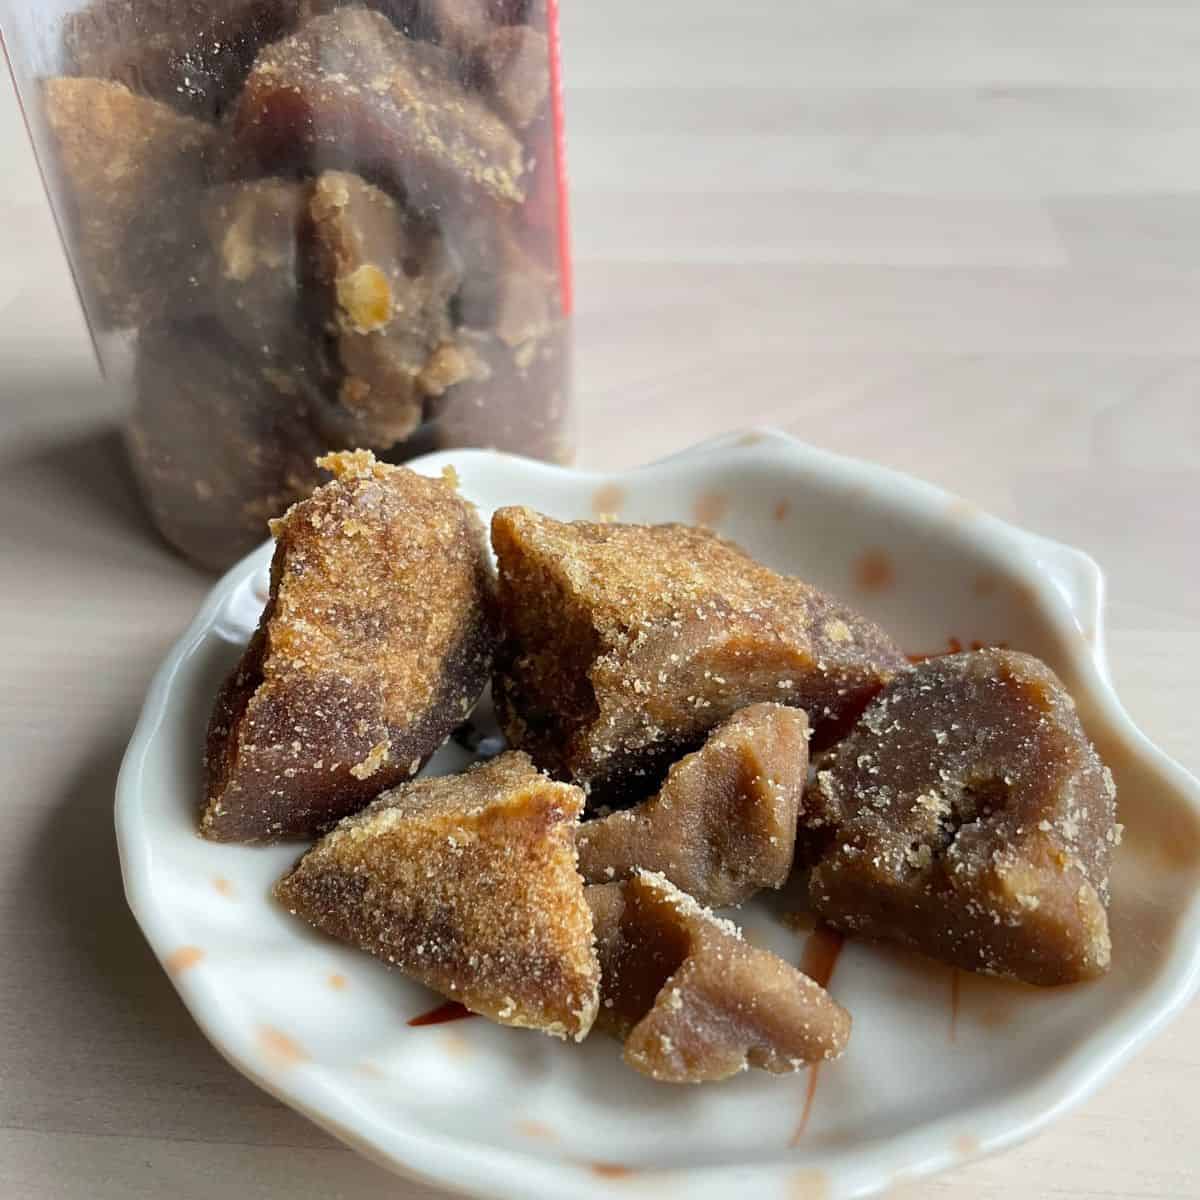 Gula melaka sugar from Malaysia